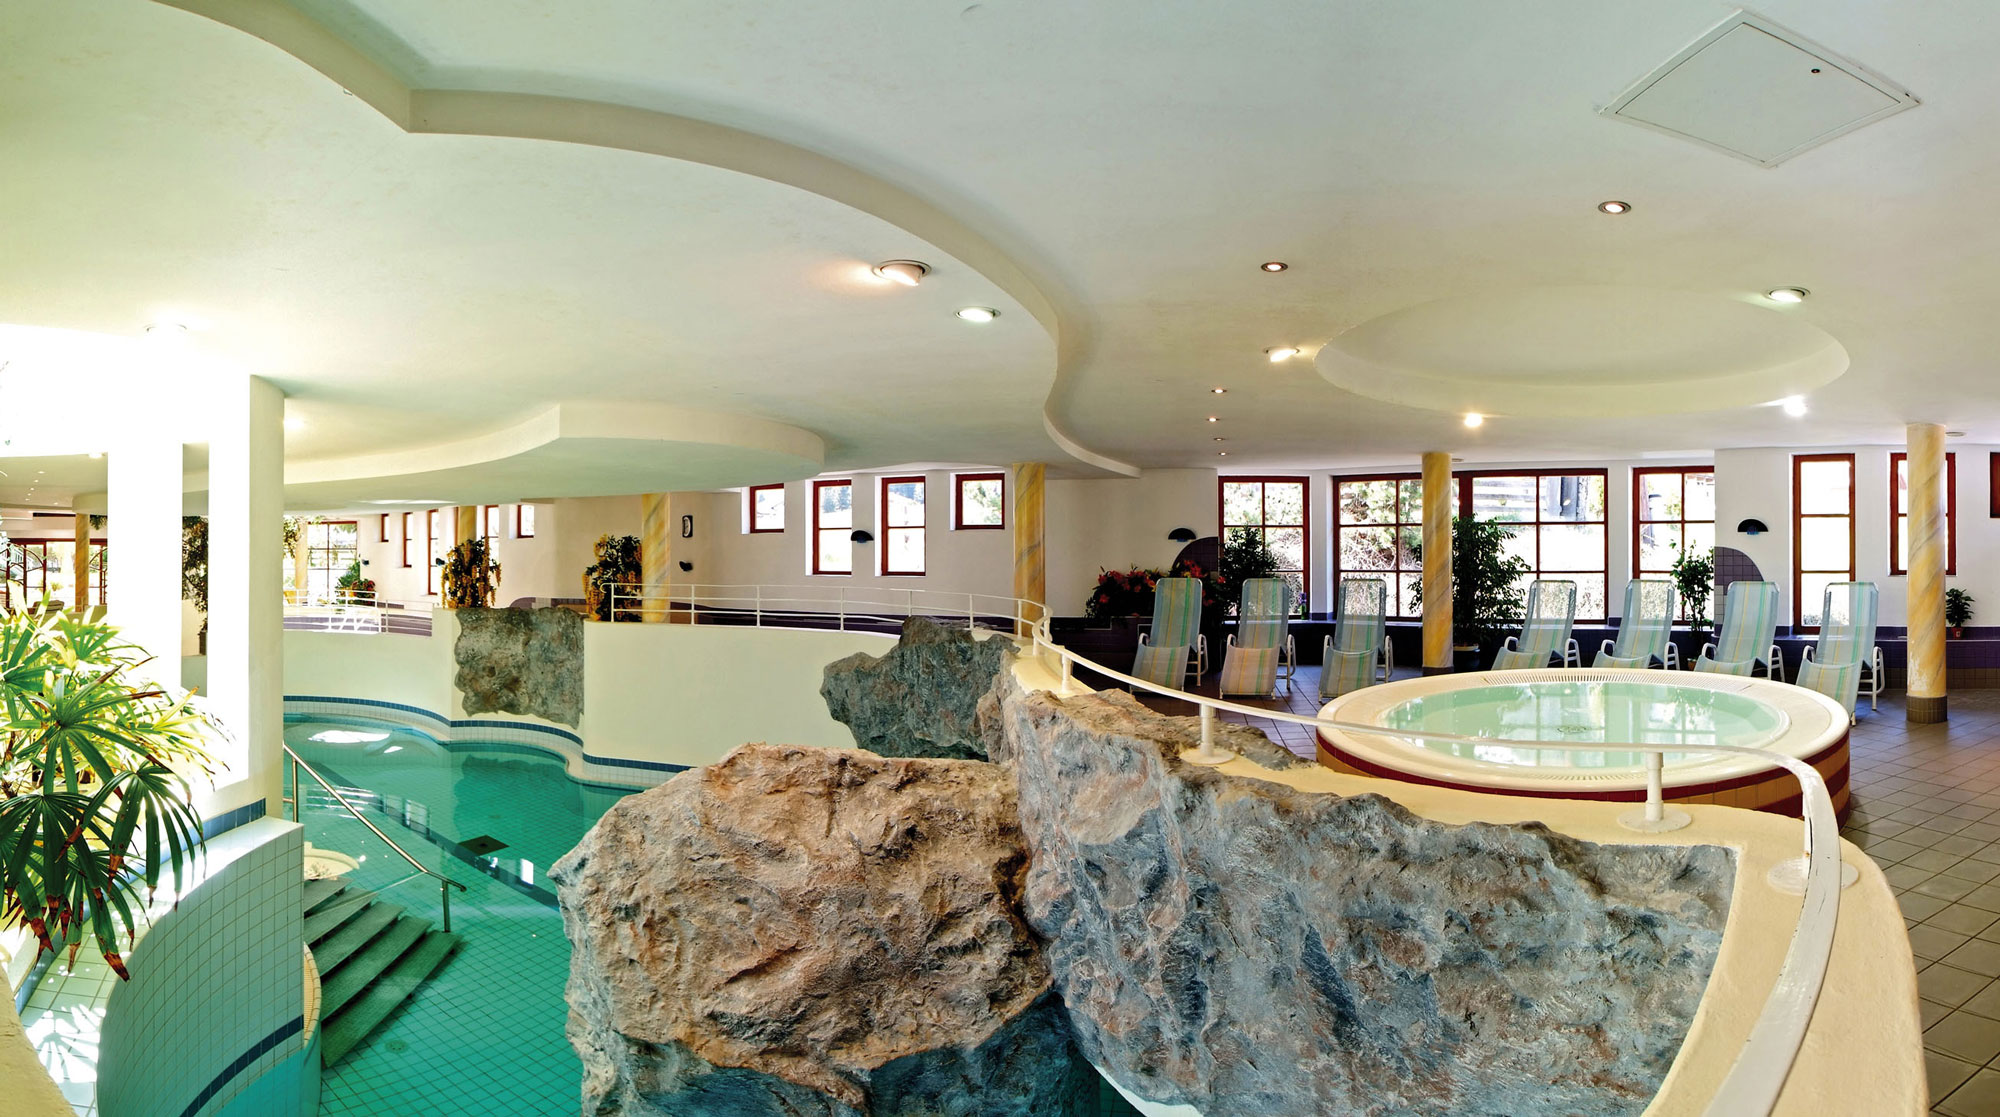 Atrakcje wodne w obiektach basenowych Hotelu Kindl